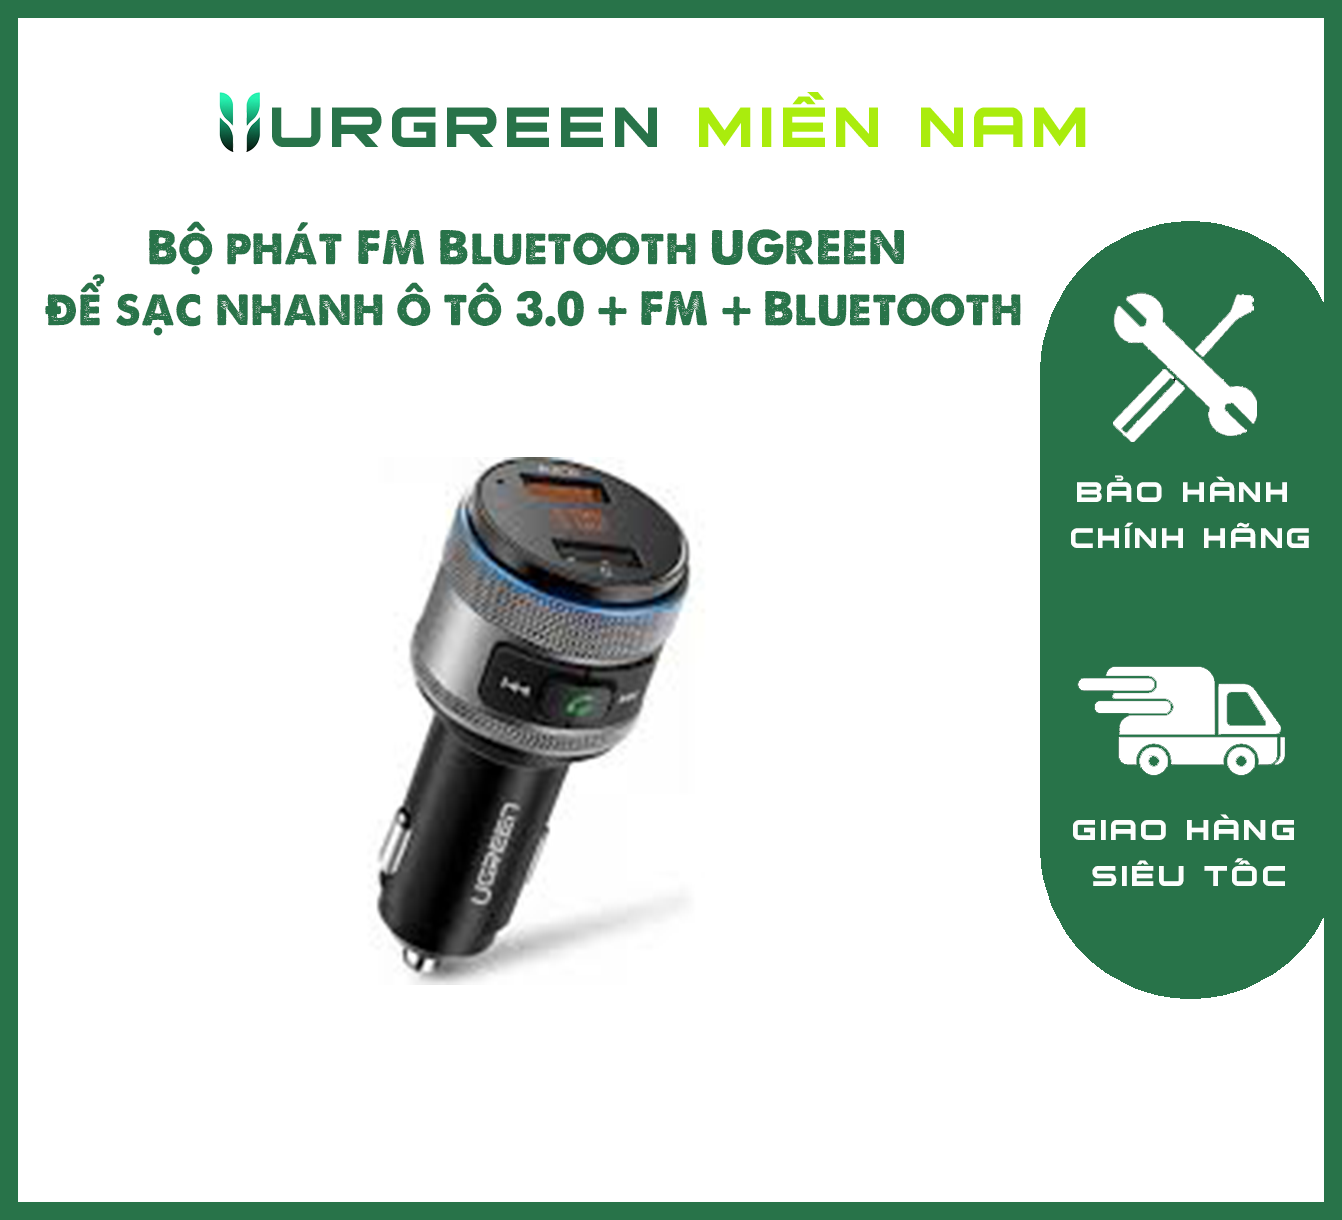 Bộ phát FM Bluetooth UGREEN để sạc nhanh ô tô 3.0 + FM + Bluetooth 4.2 (Đen / Xám) 60283